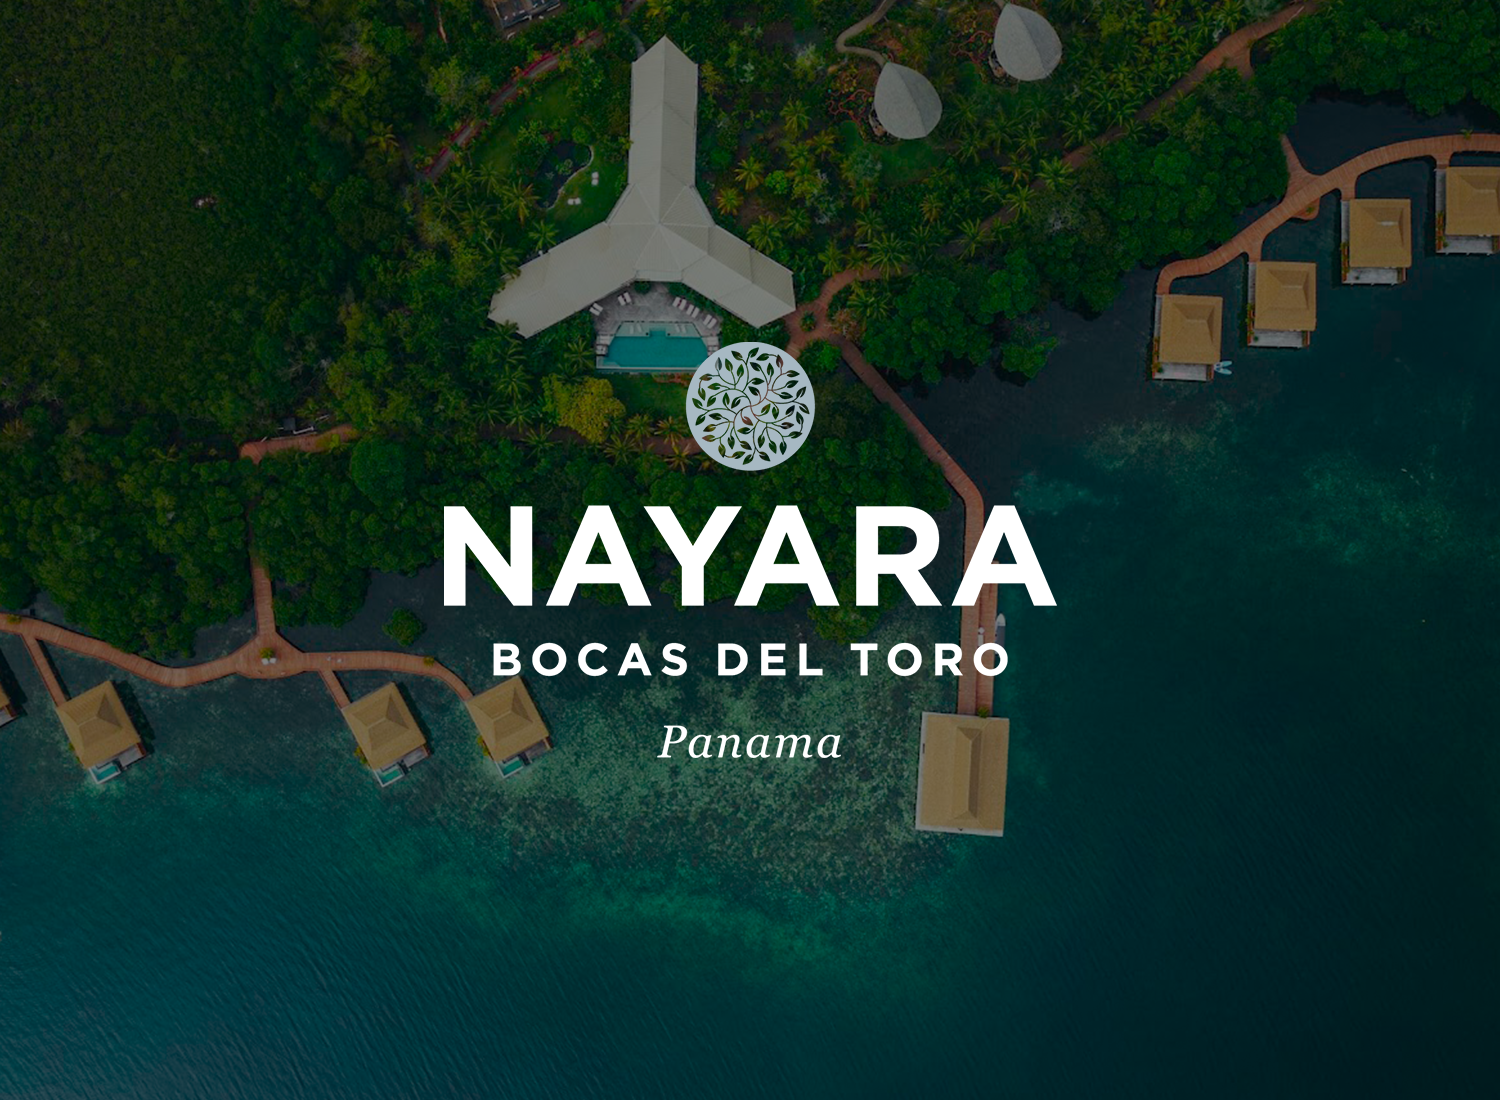 Tarifas especiales en Nayara – Bocas del Toro